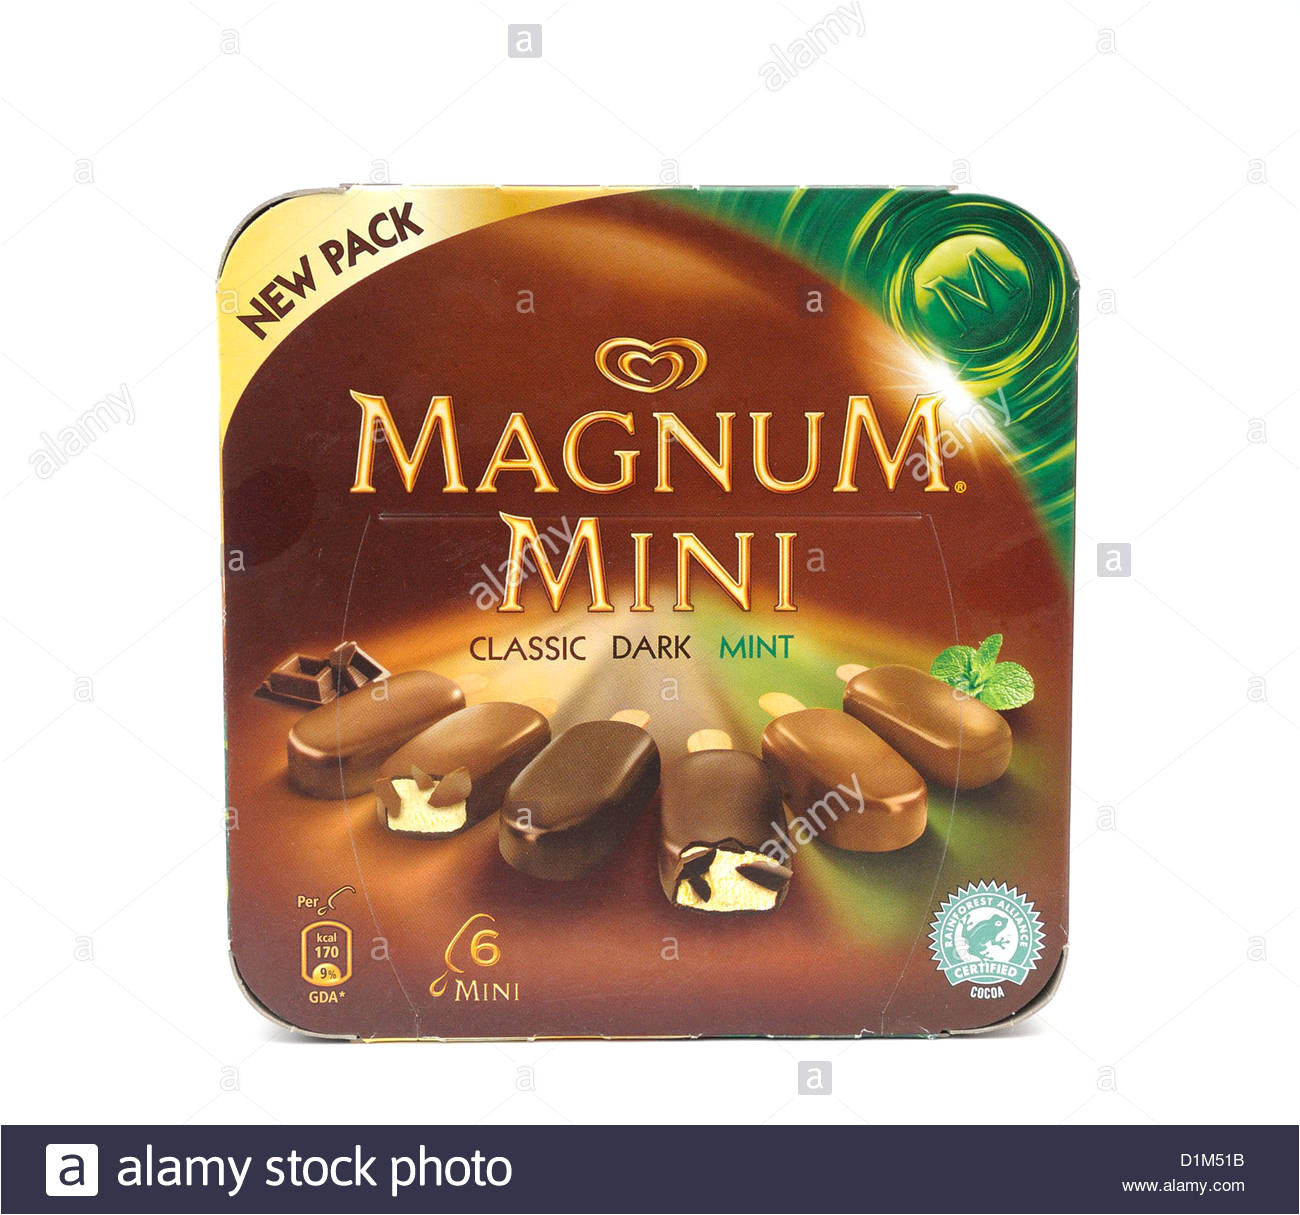 walls magnum mini classic dark mint ice cream chocolate stock image